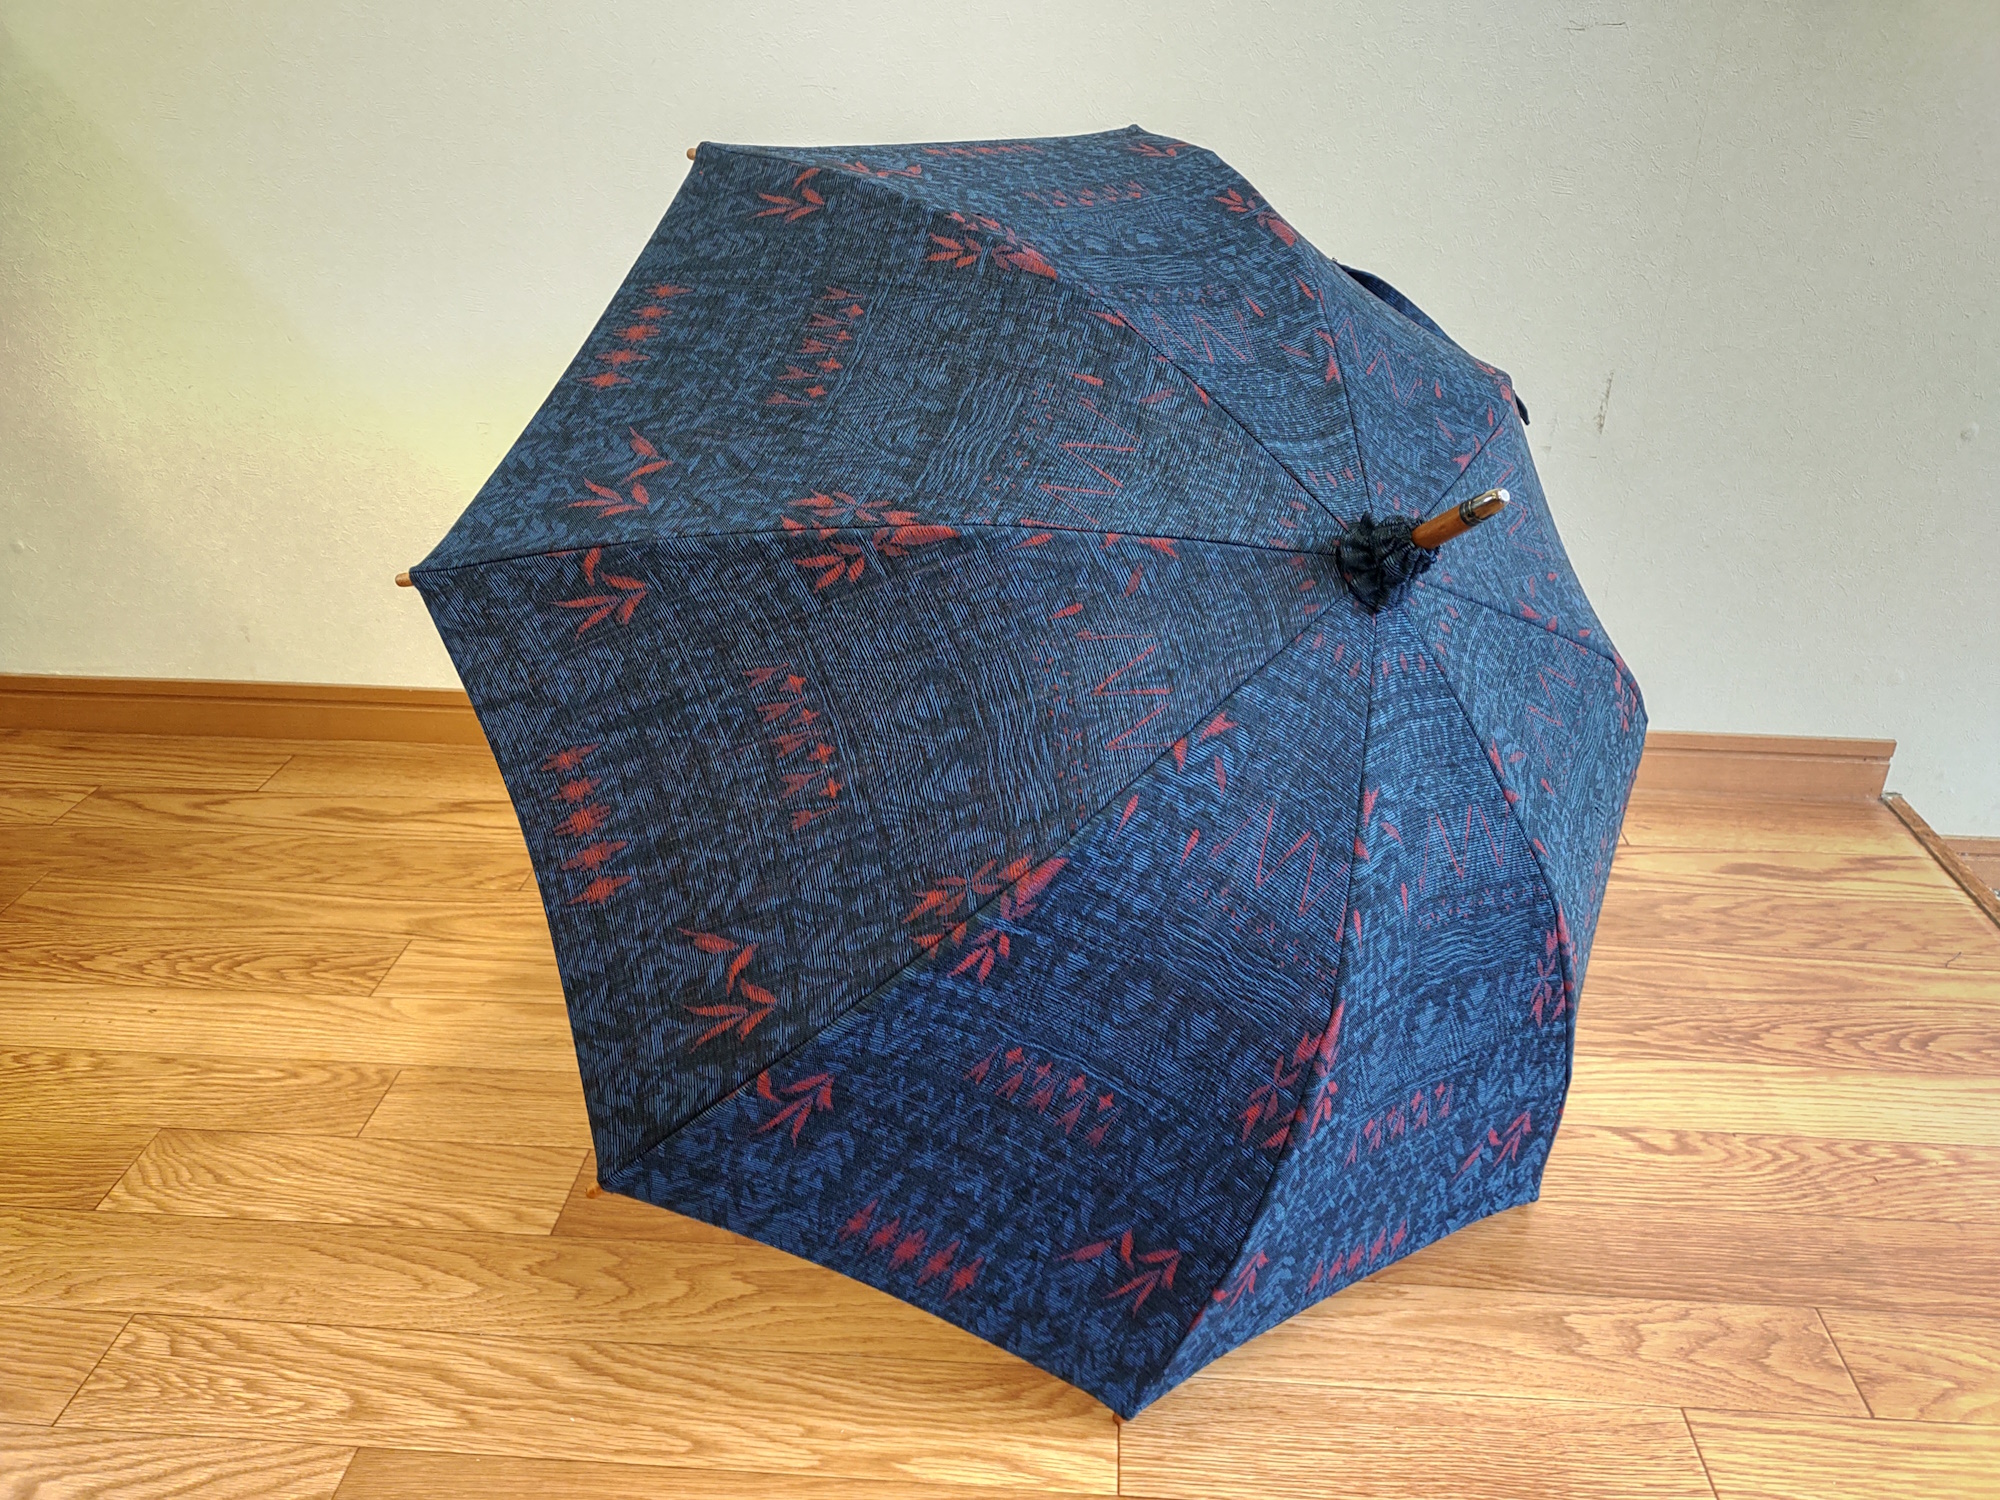 傘寿のお母さまに着物からお仕立てした日傘をプレゼント